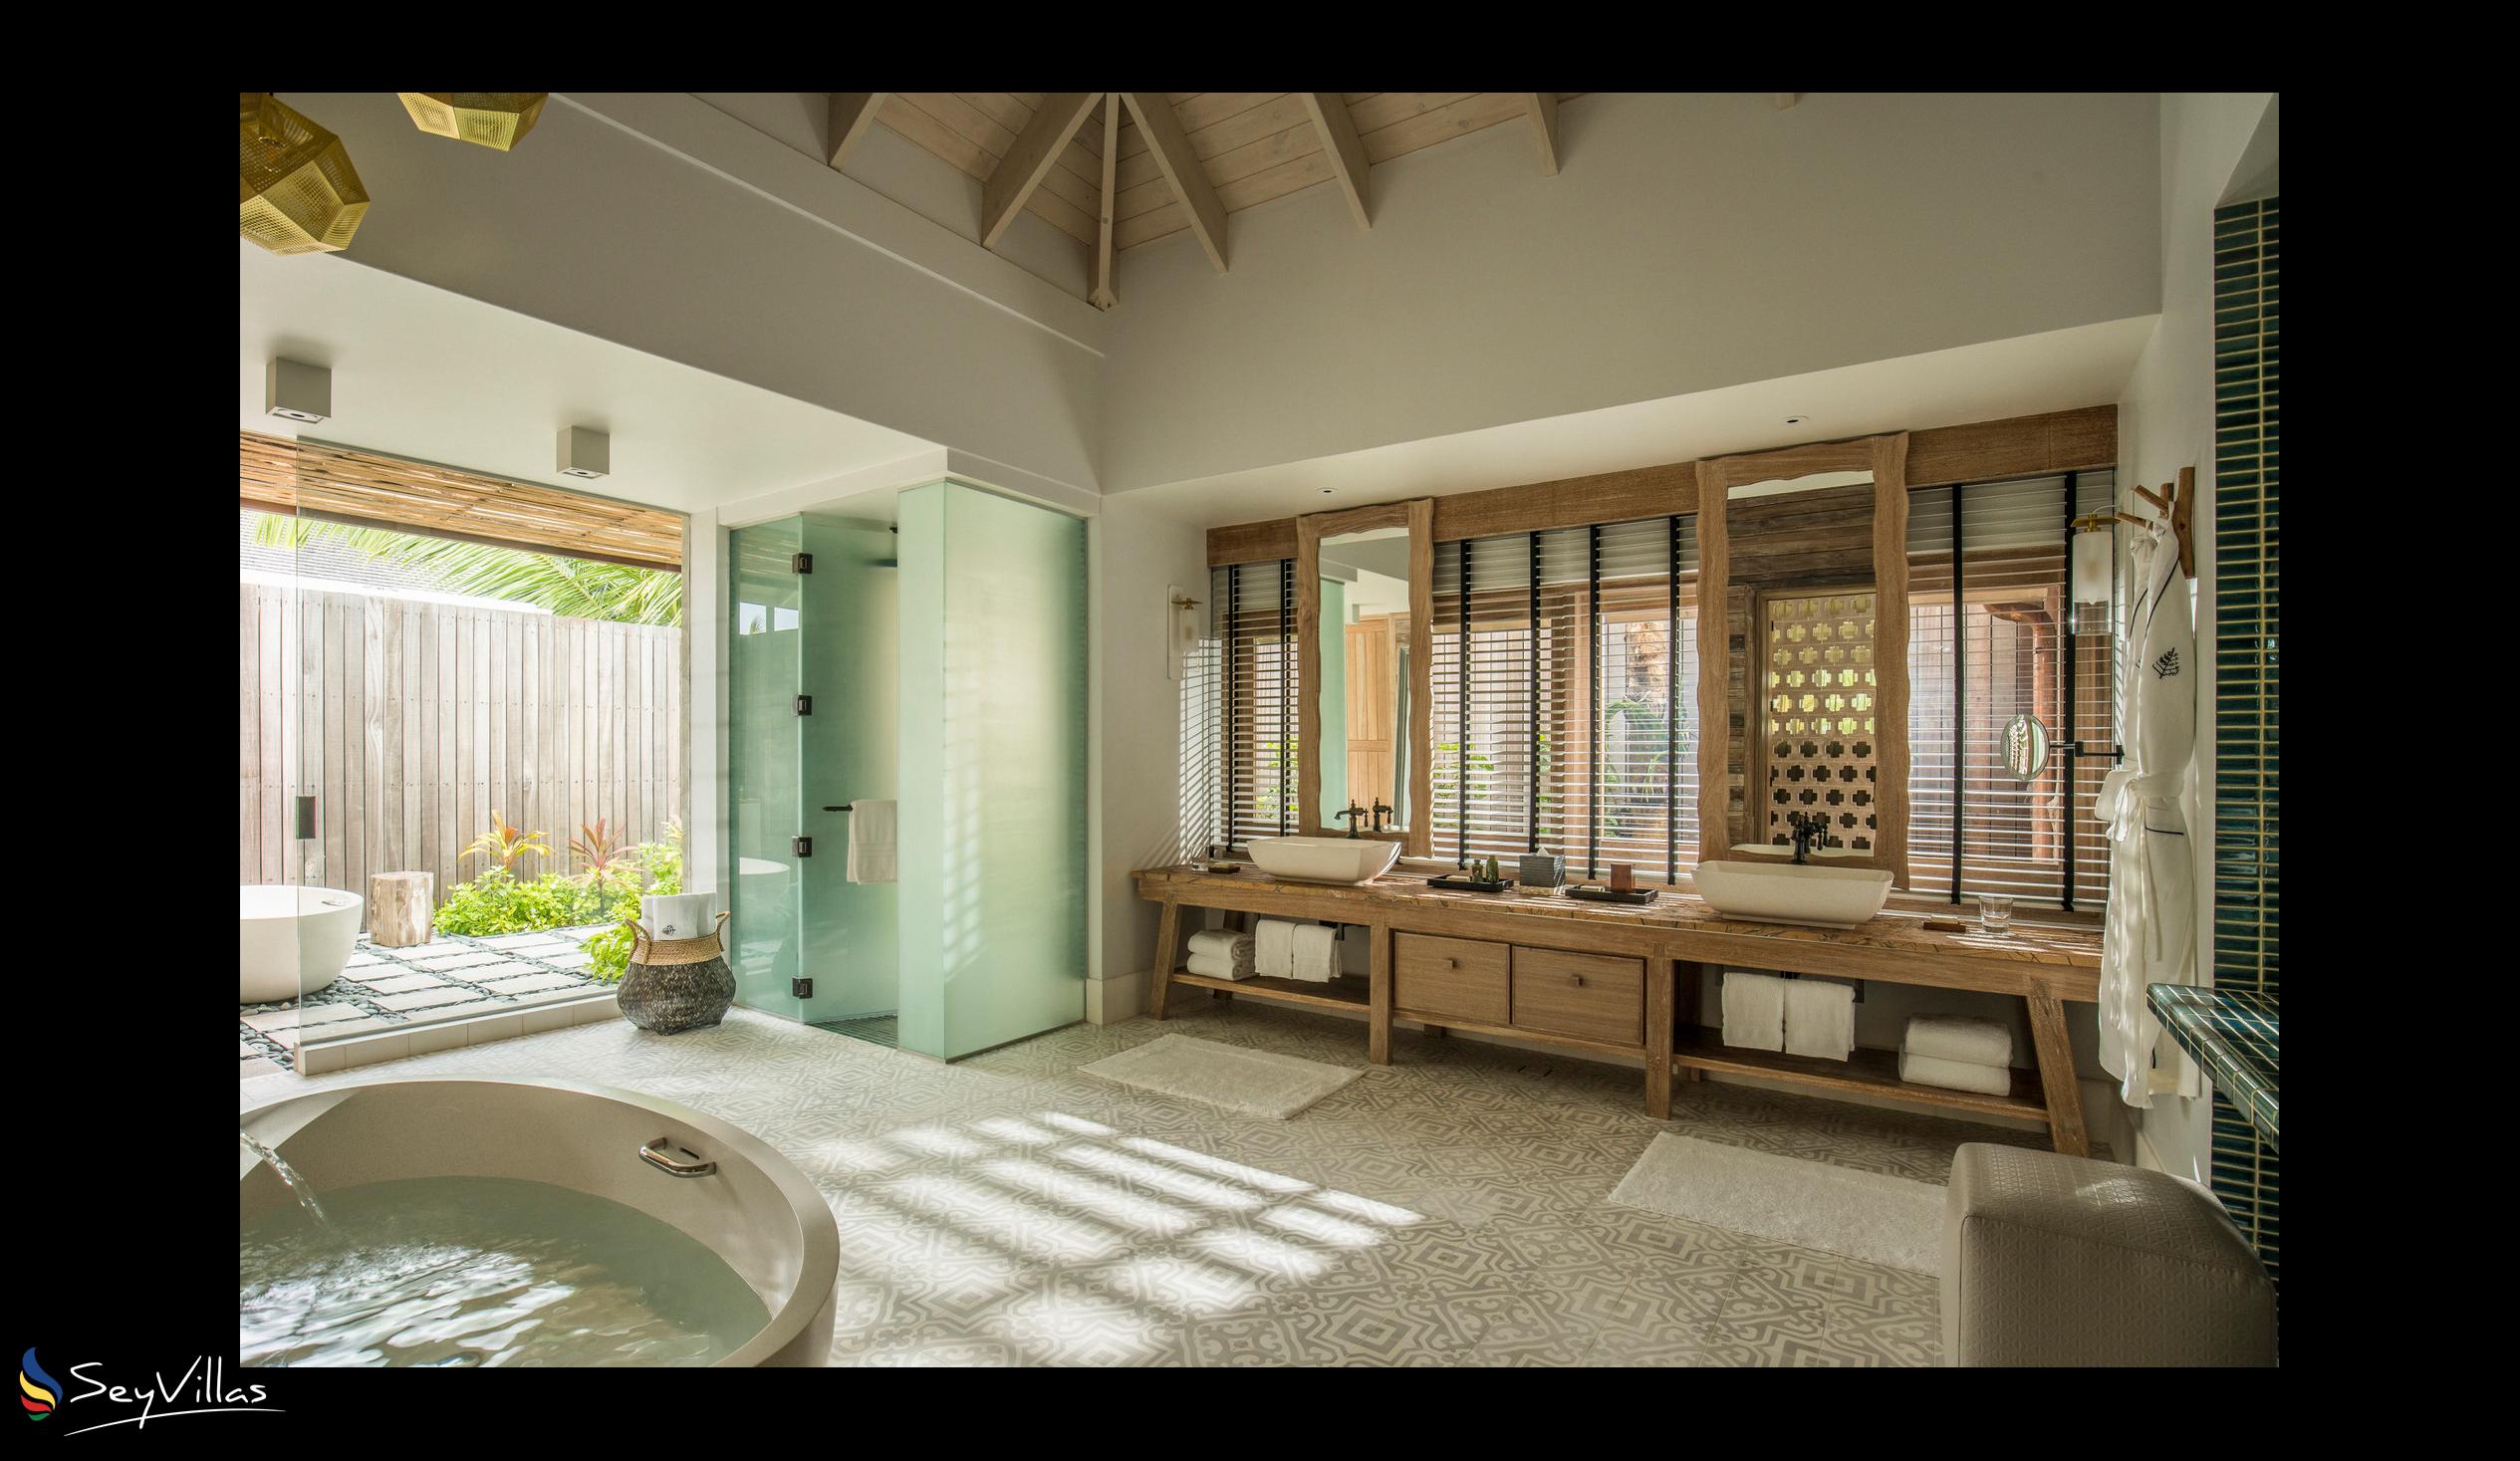 Foto 188: Four Seasons Resort Desroches Island - 3-Schlafzimmer Präsidenten-Villa - Desroches Island (Seychellen)